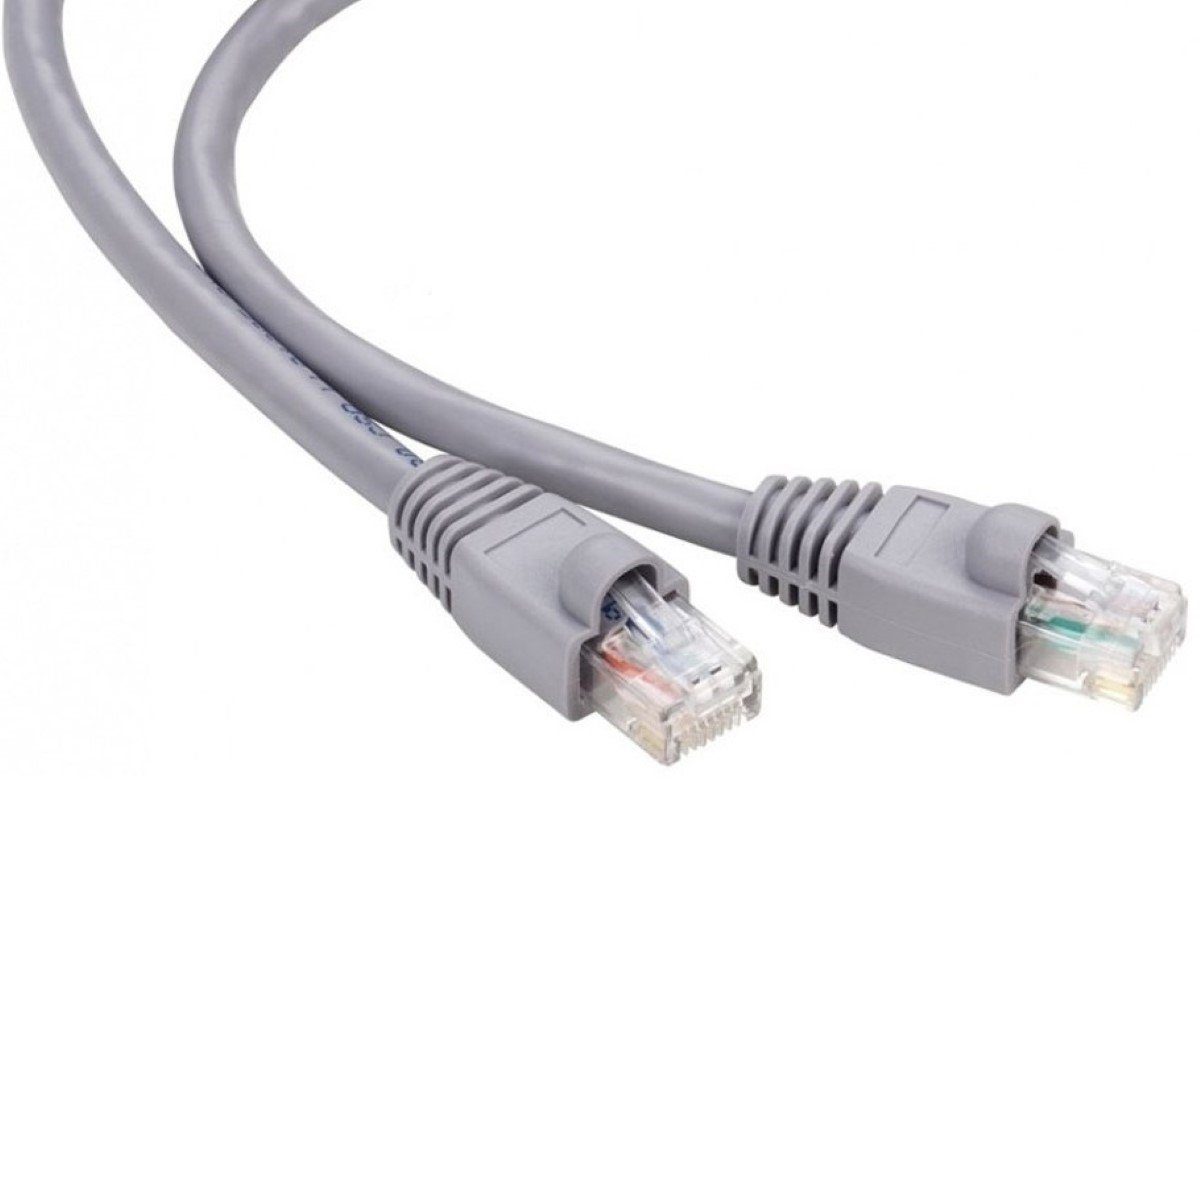 RCA 0,5m Netzwerk-Kabel Cat5e STP Lan-Kabel Grau Lan кабель, RJ45, Kein (50 cm), Patch-Kabel Cat 5e Gigabit Ethernet